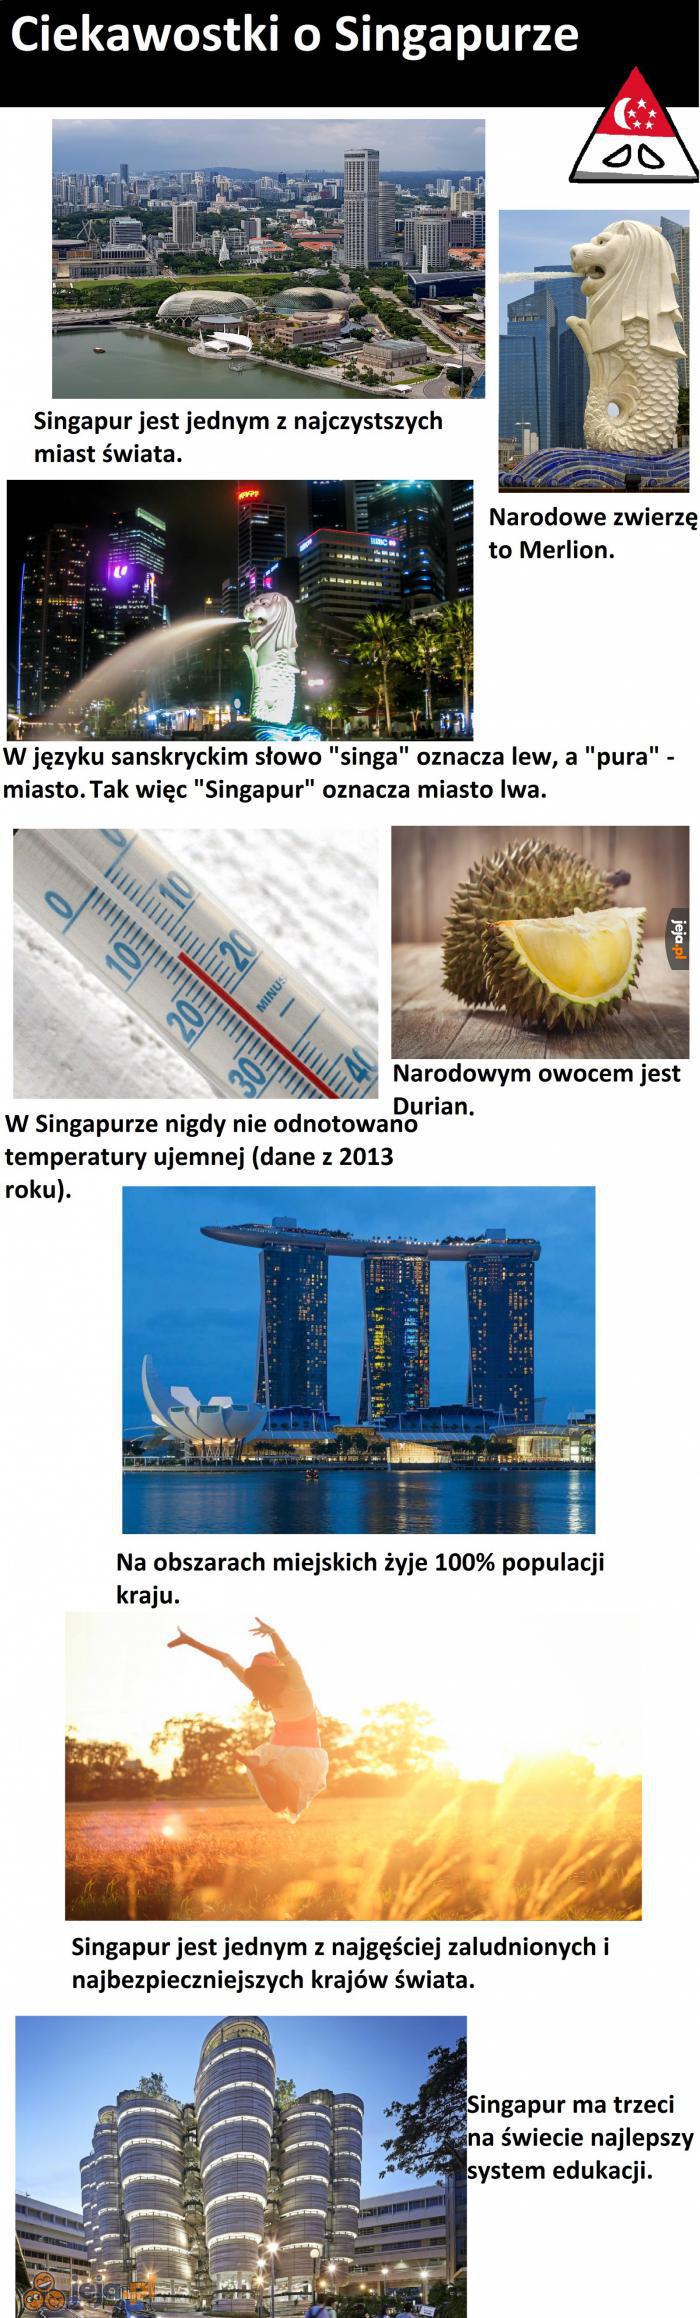 Ciekawostki o Singapurze